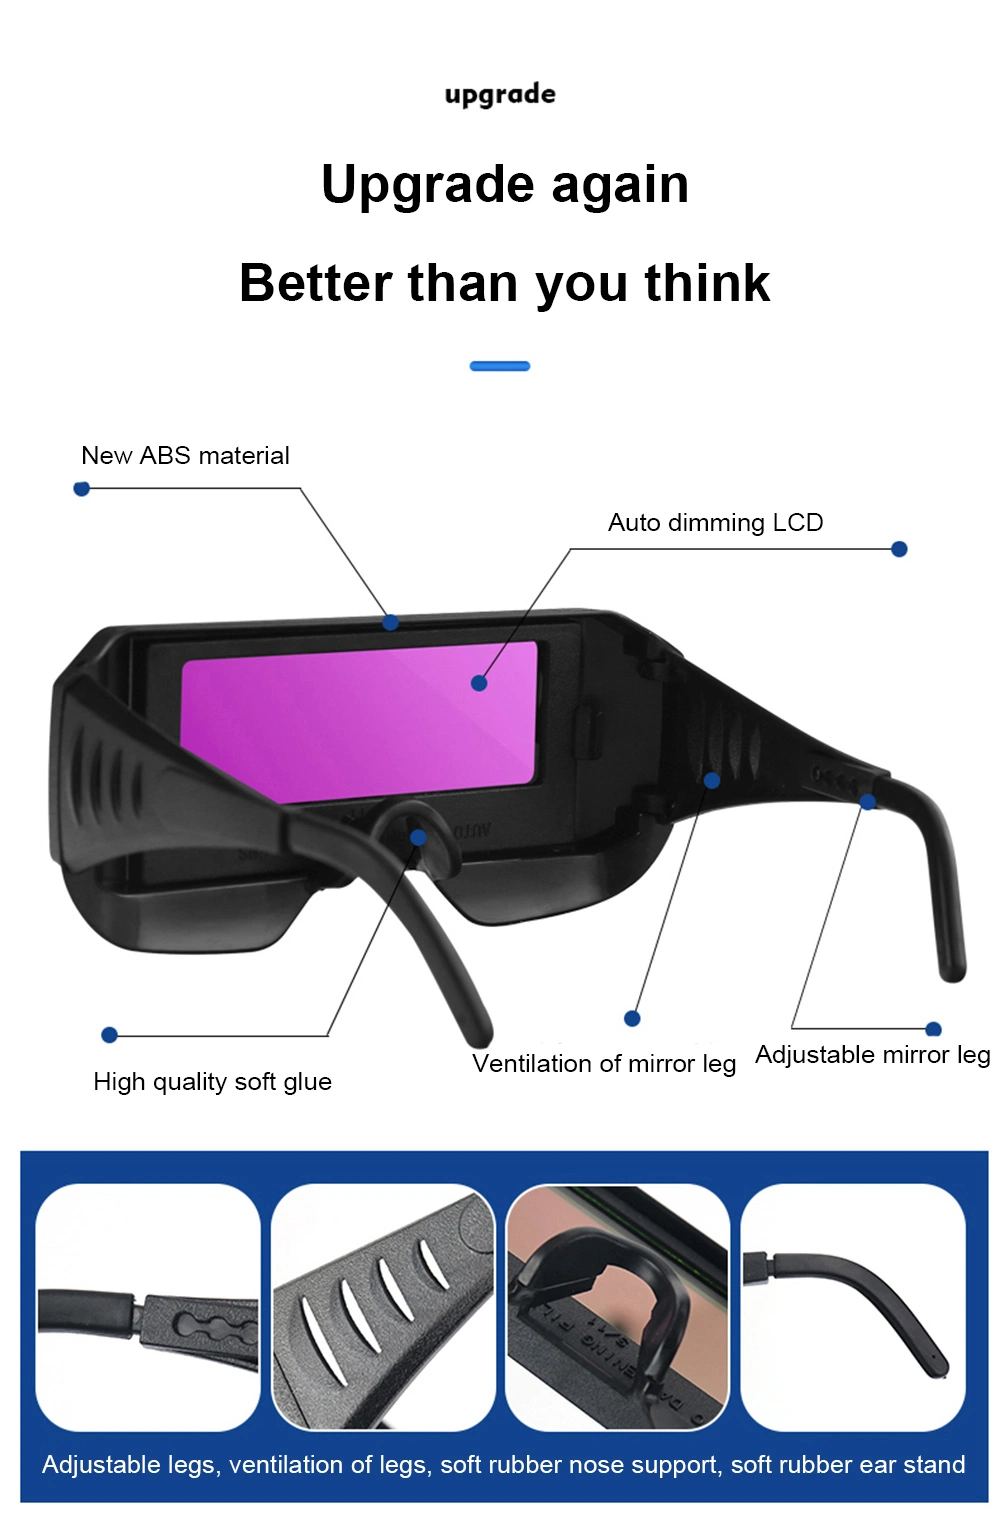 Factory New Technology Auto Darkening Welding Glasses Used for Welder Welding Prevent Strong Light Damage Glasses